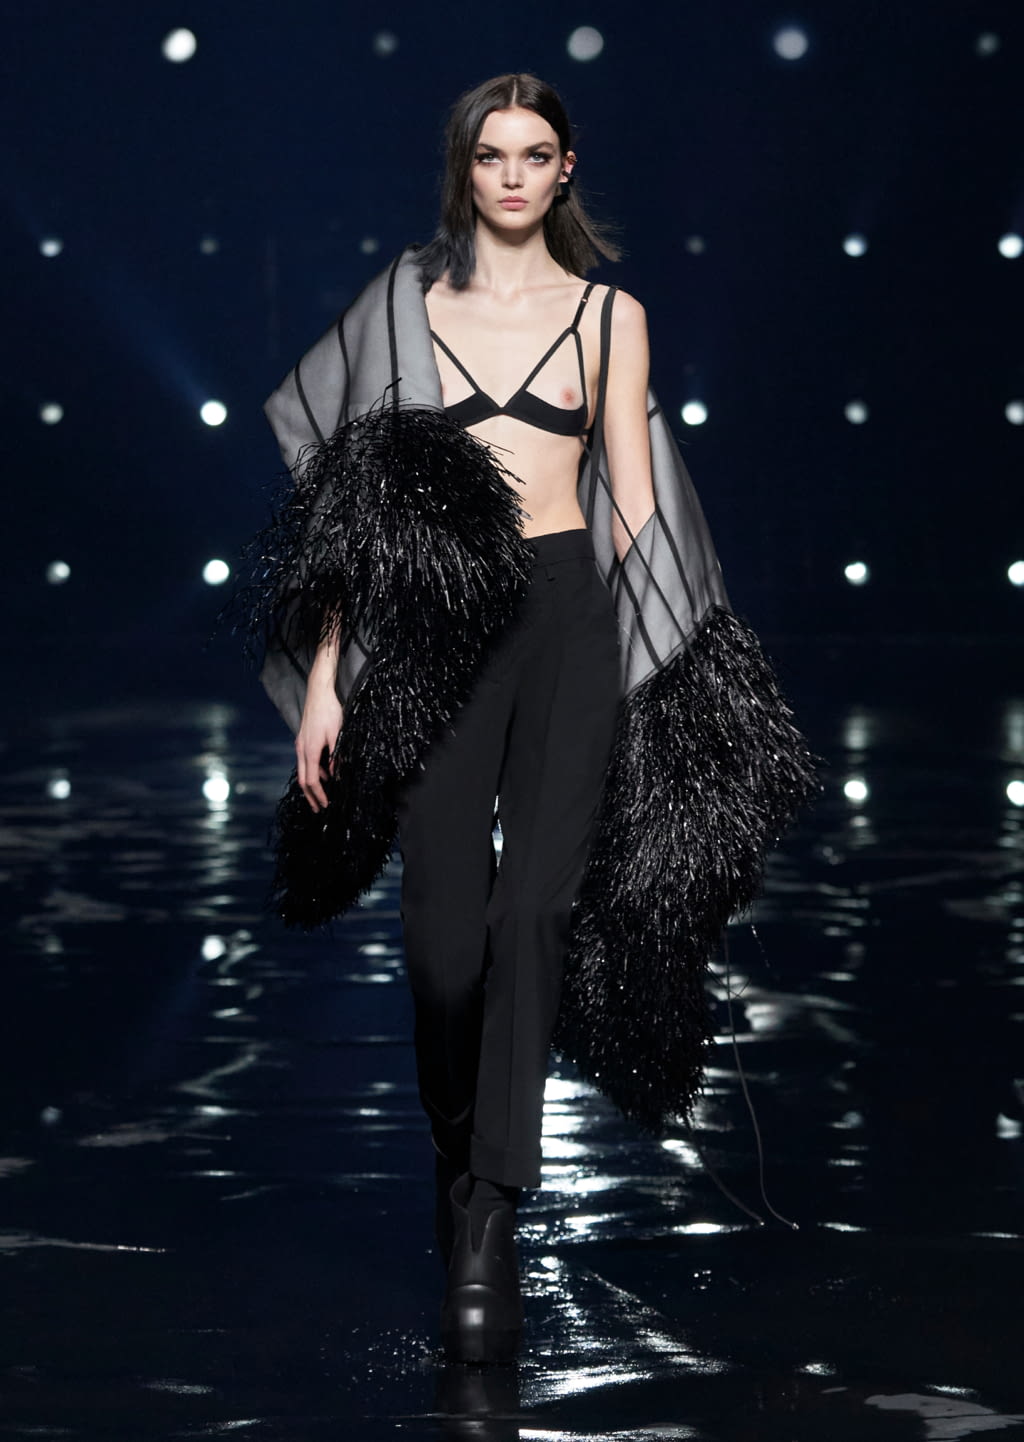 Louis Vuitton FW21 womenswear #22 - Tagwalk: il motore di ricerca della moda